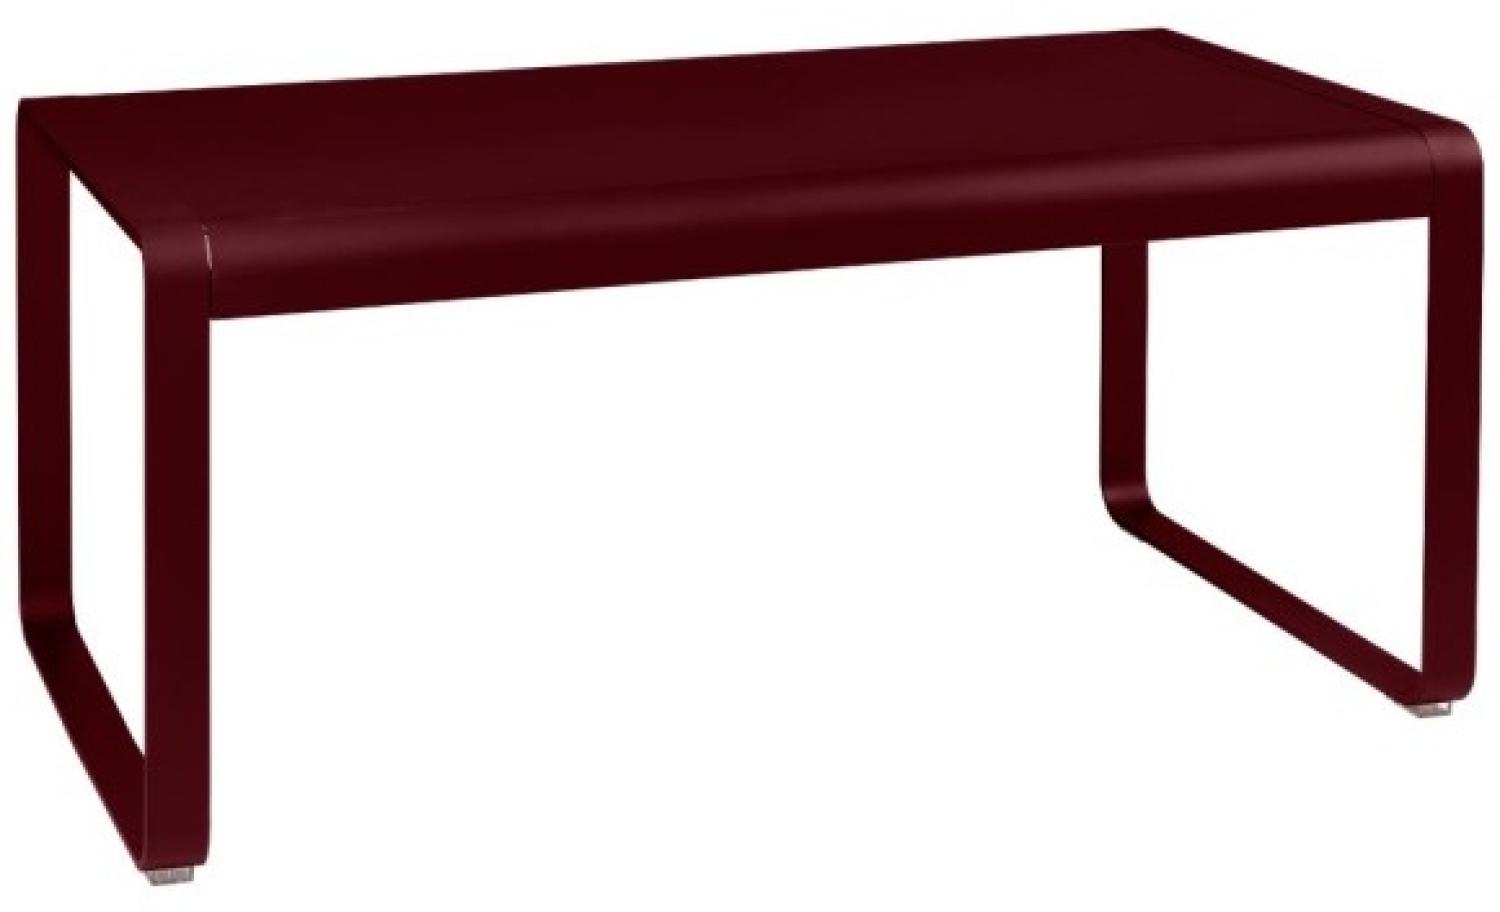 Bellevie halbhoher Lounge-Tisch Schwarzkirsche 140 x 80 cm Bild 1